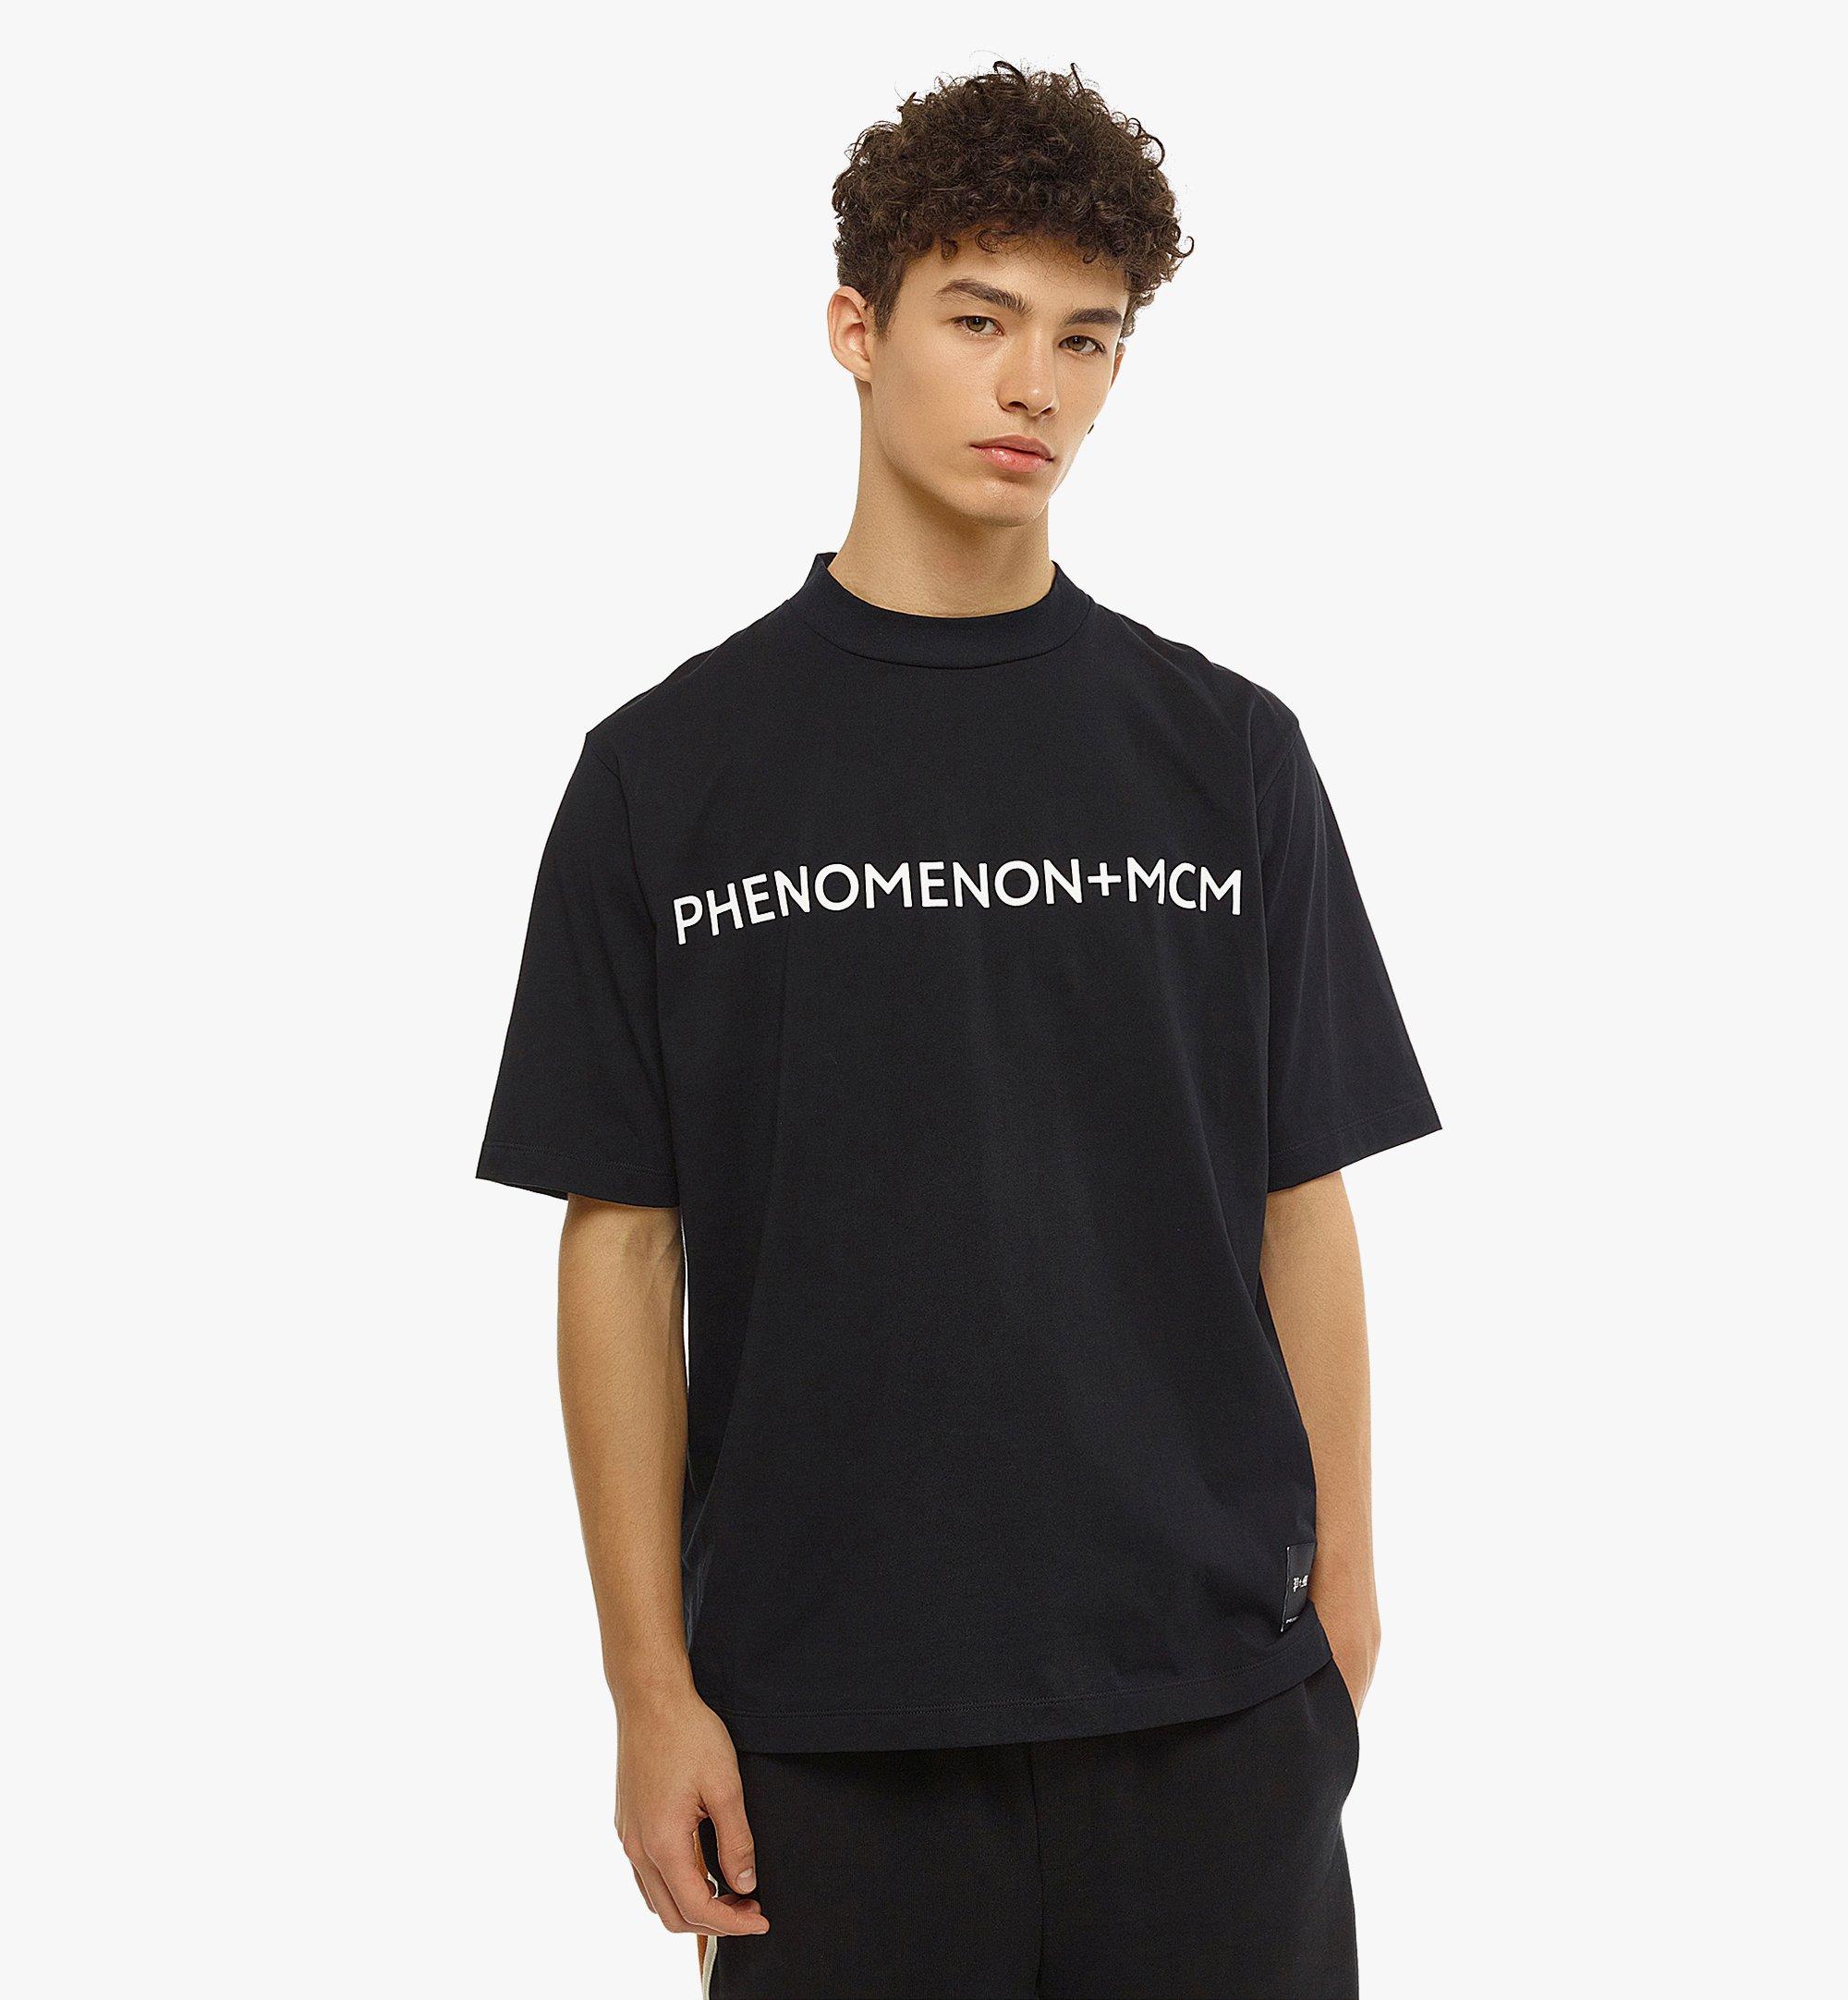 MサイズMCM by PHENOMENON フェノメノン Tシャツ M